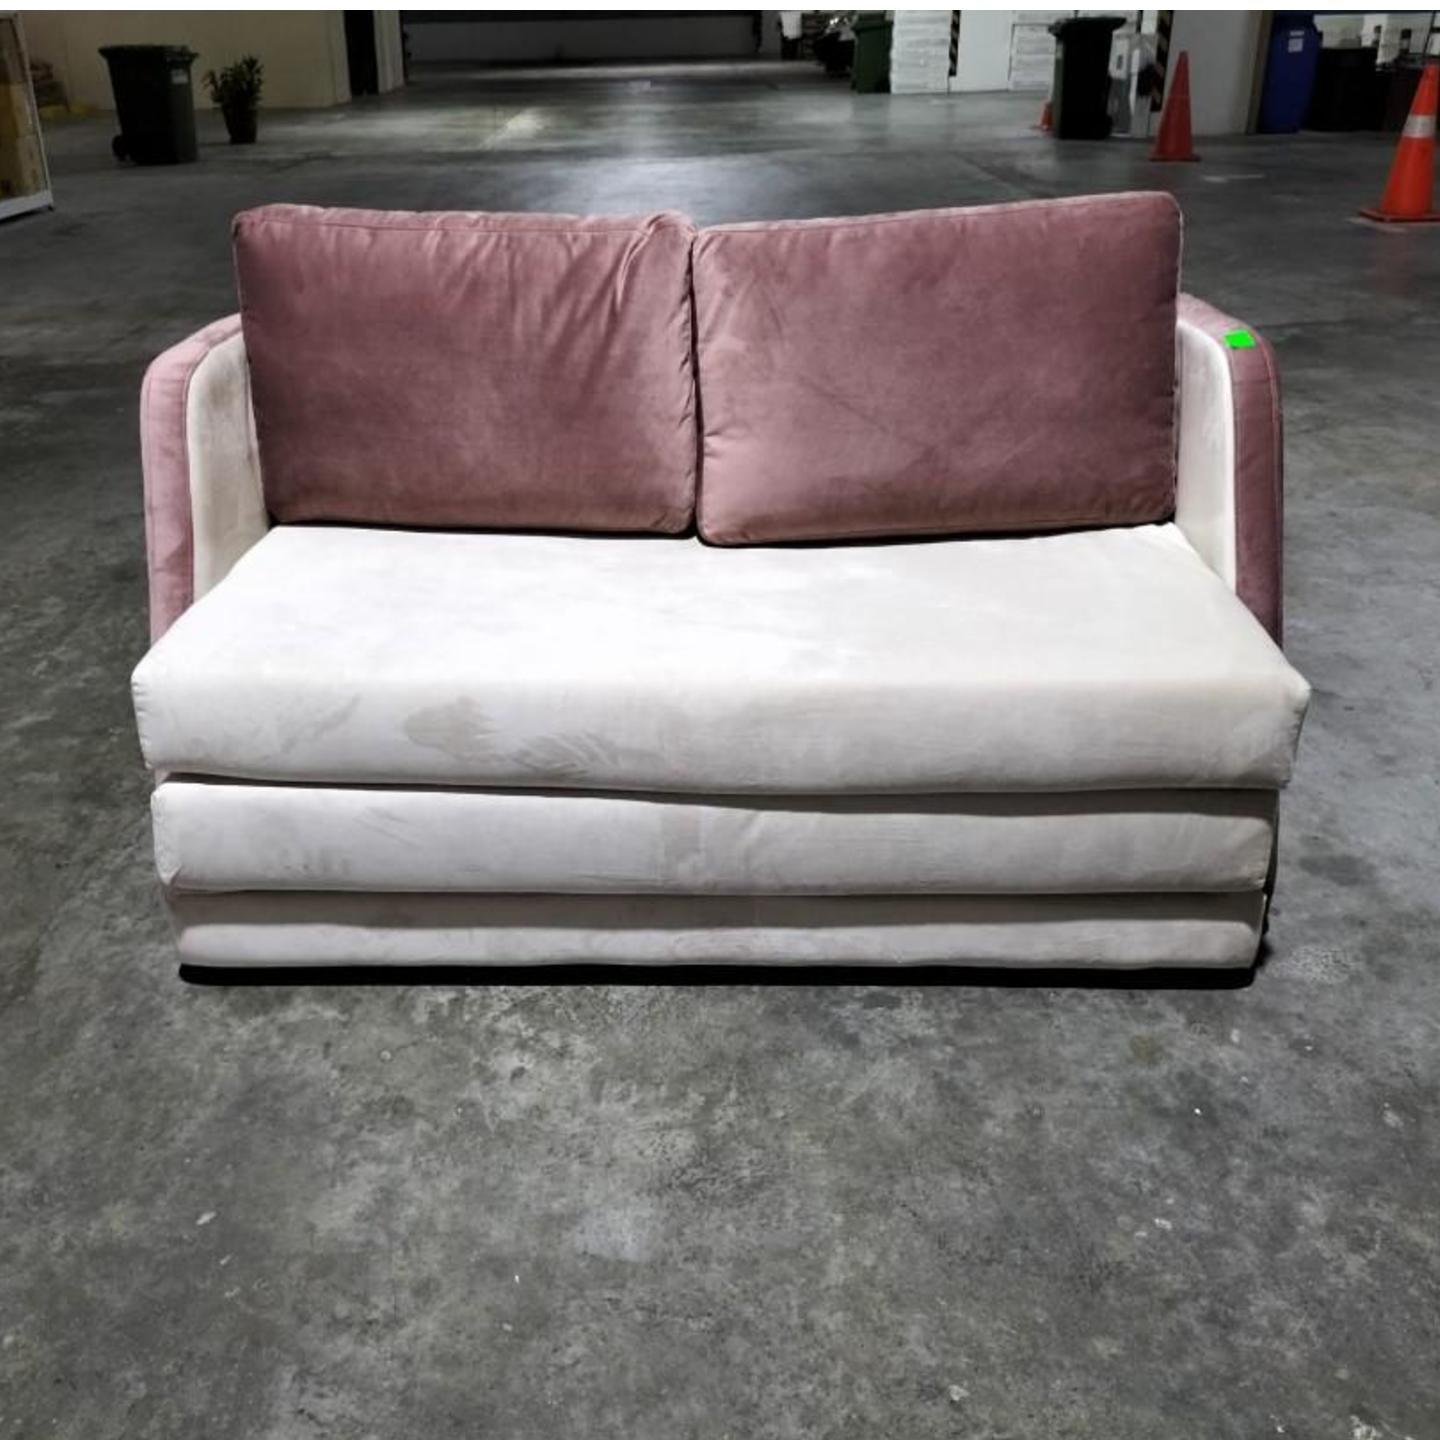 MATILDA 2 Seater Sofa Bed